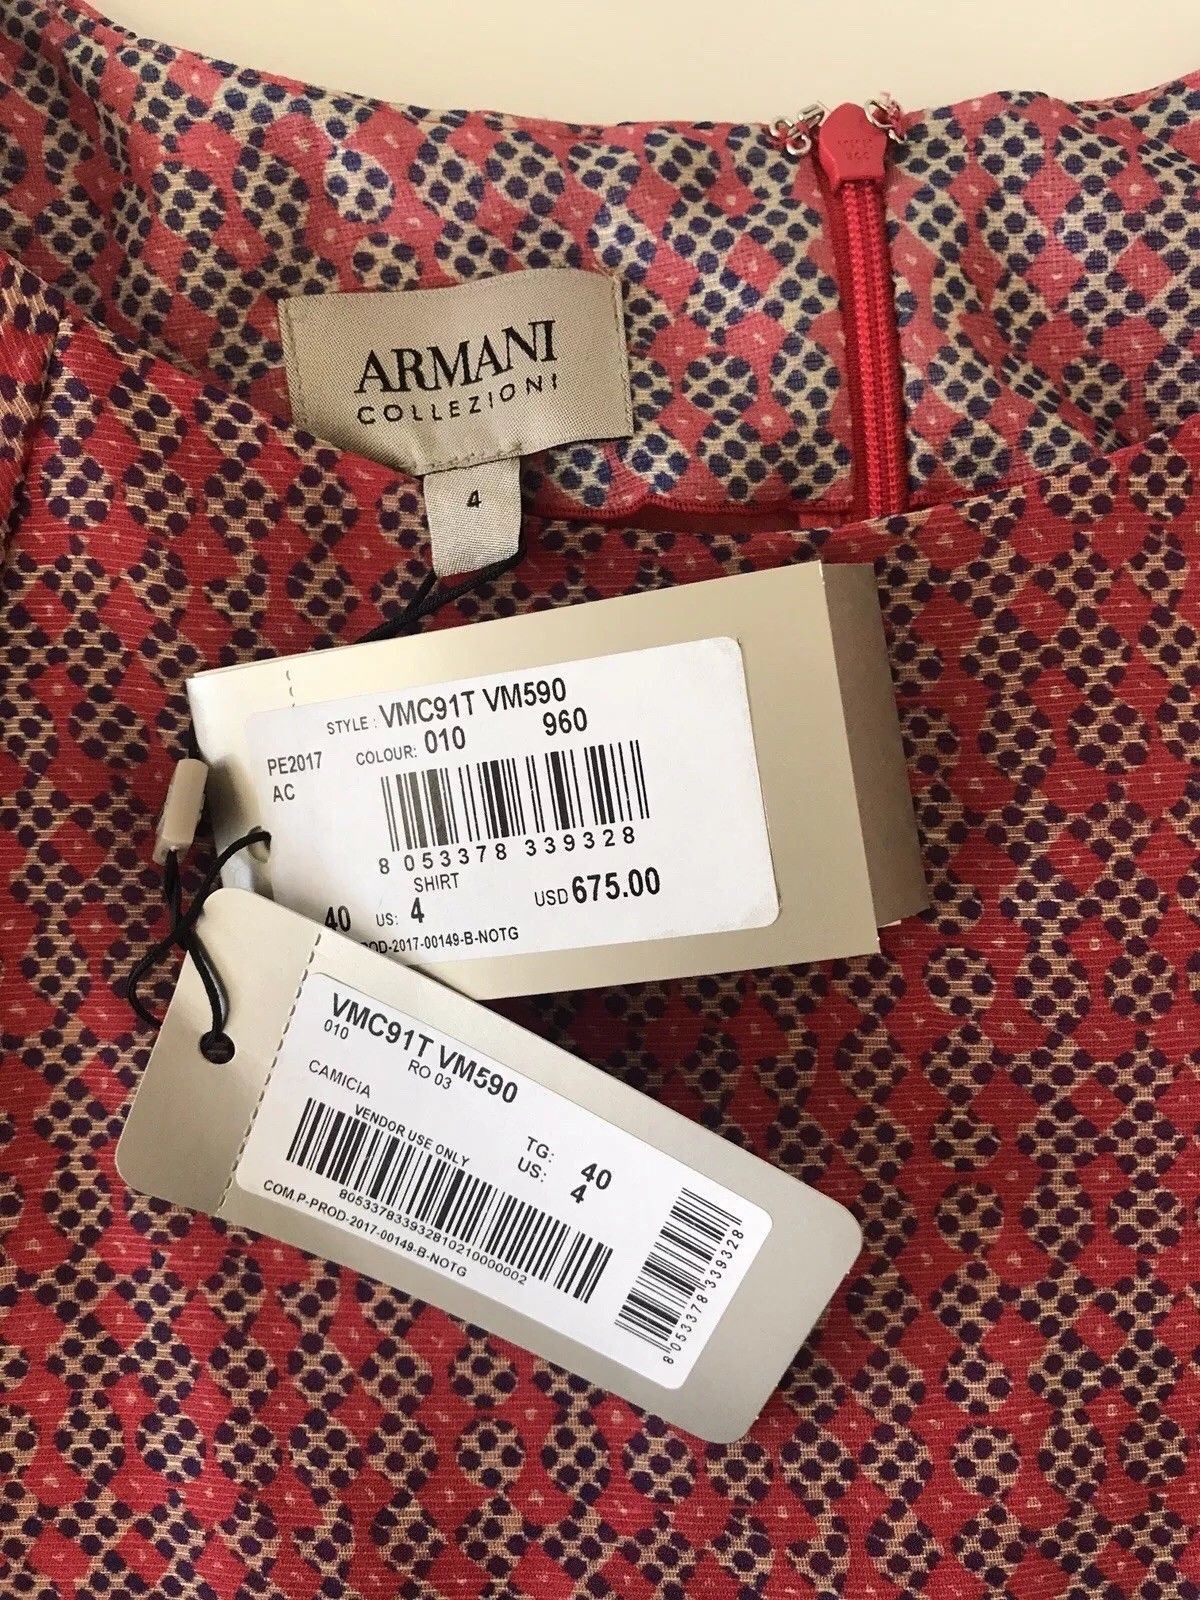 NWT $675 Armani Collezioni Women’s Multicolor Shirt Size 4 US